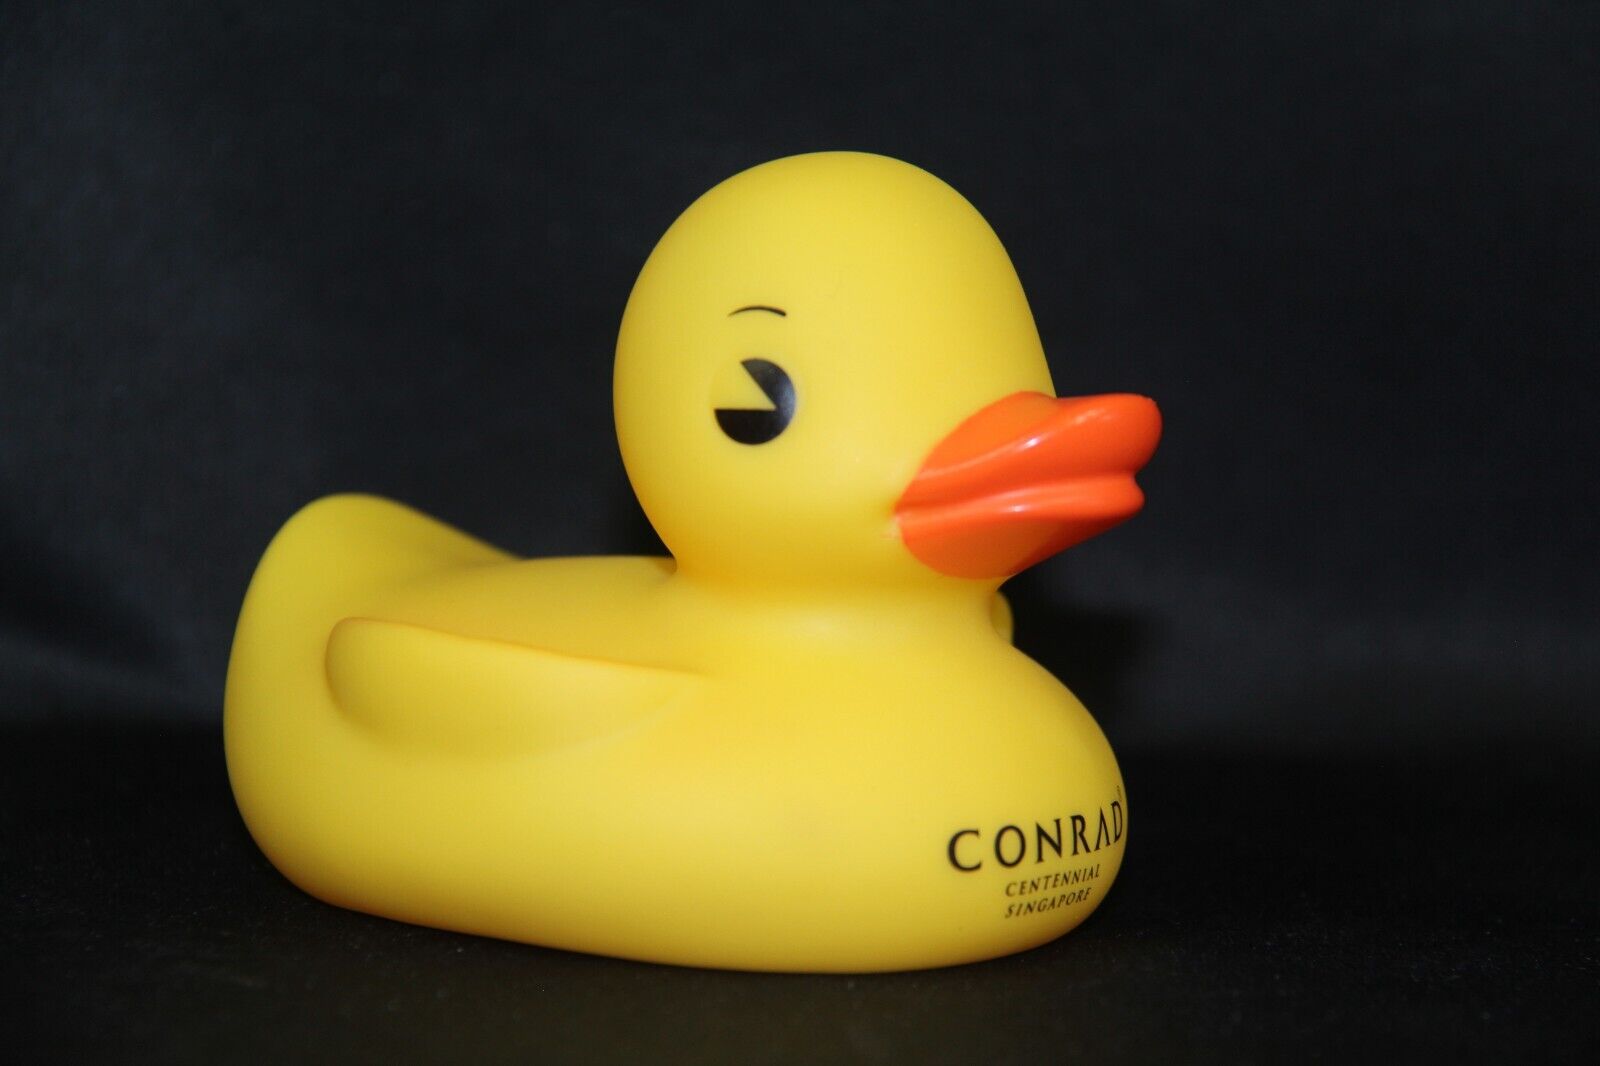 Conrad Hotel Centennial Singapore Yellow Duck Hilton Collectible Rubber Duckie